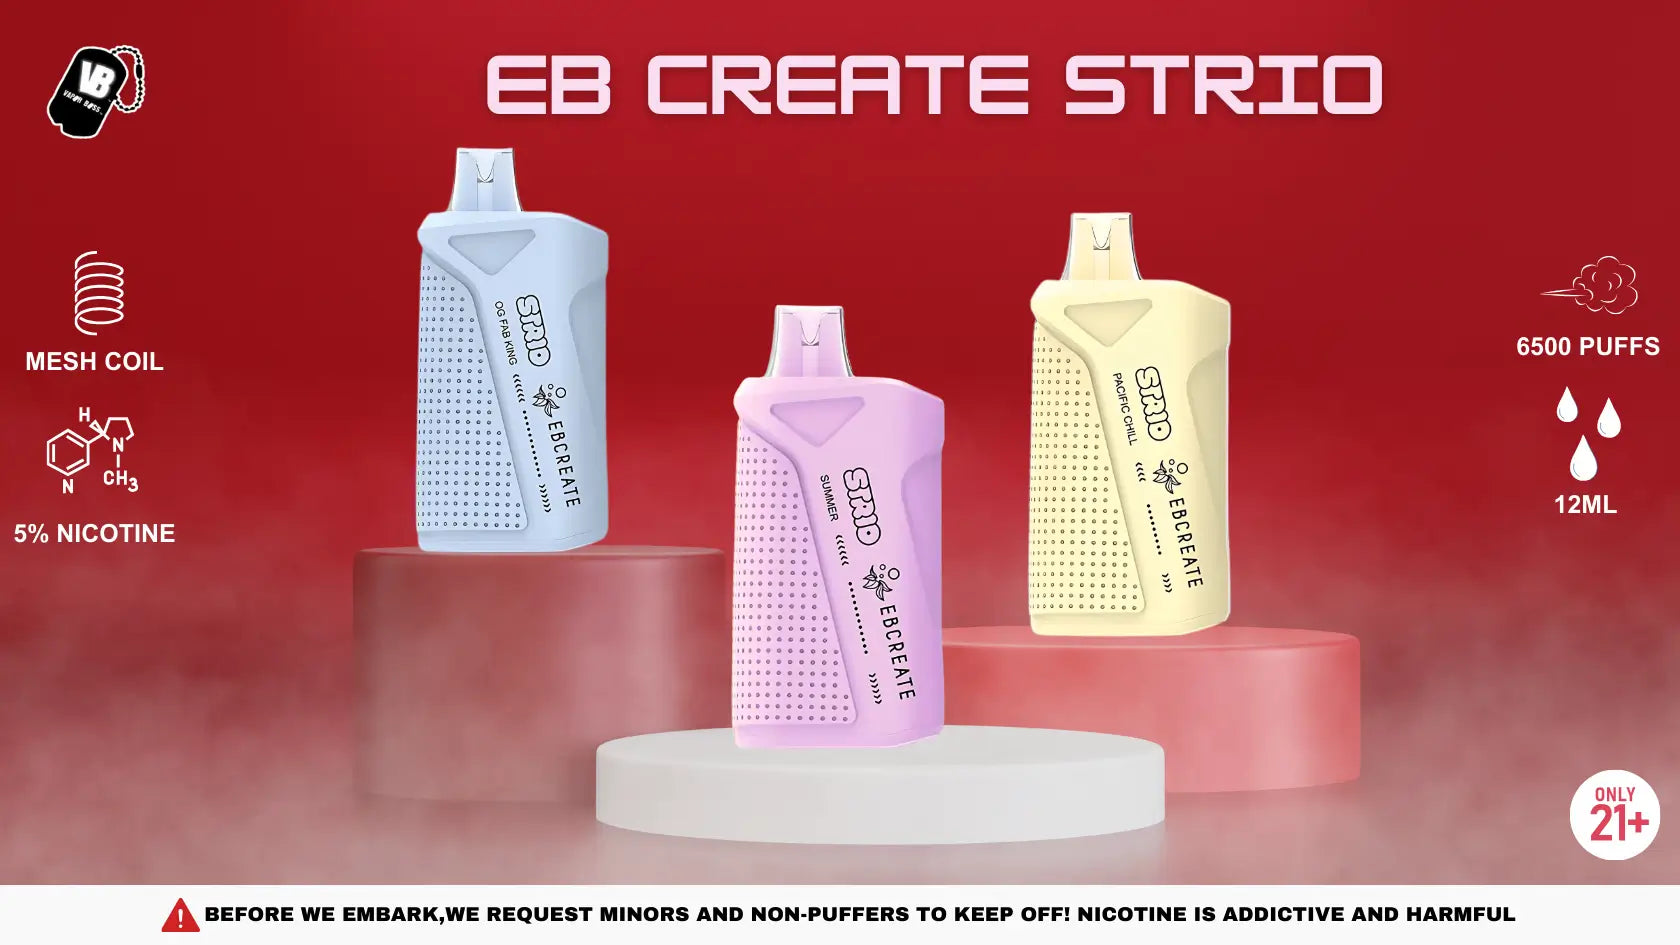 EB Create Strio